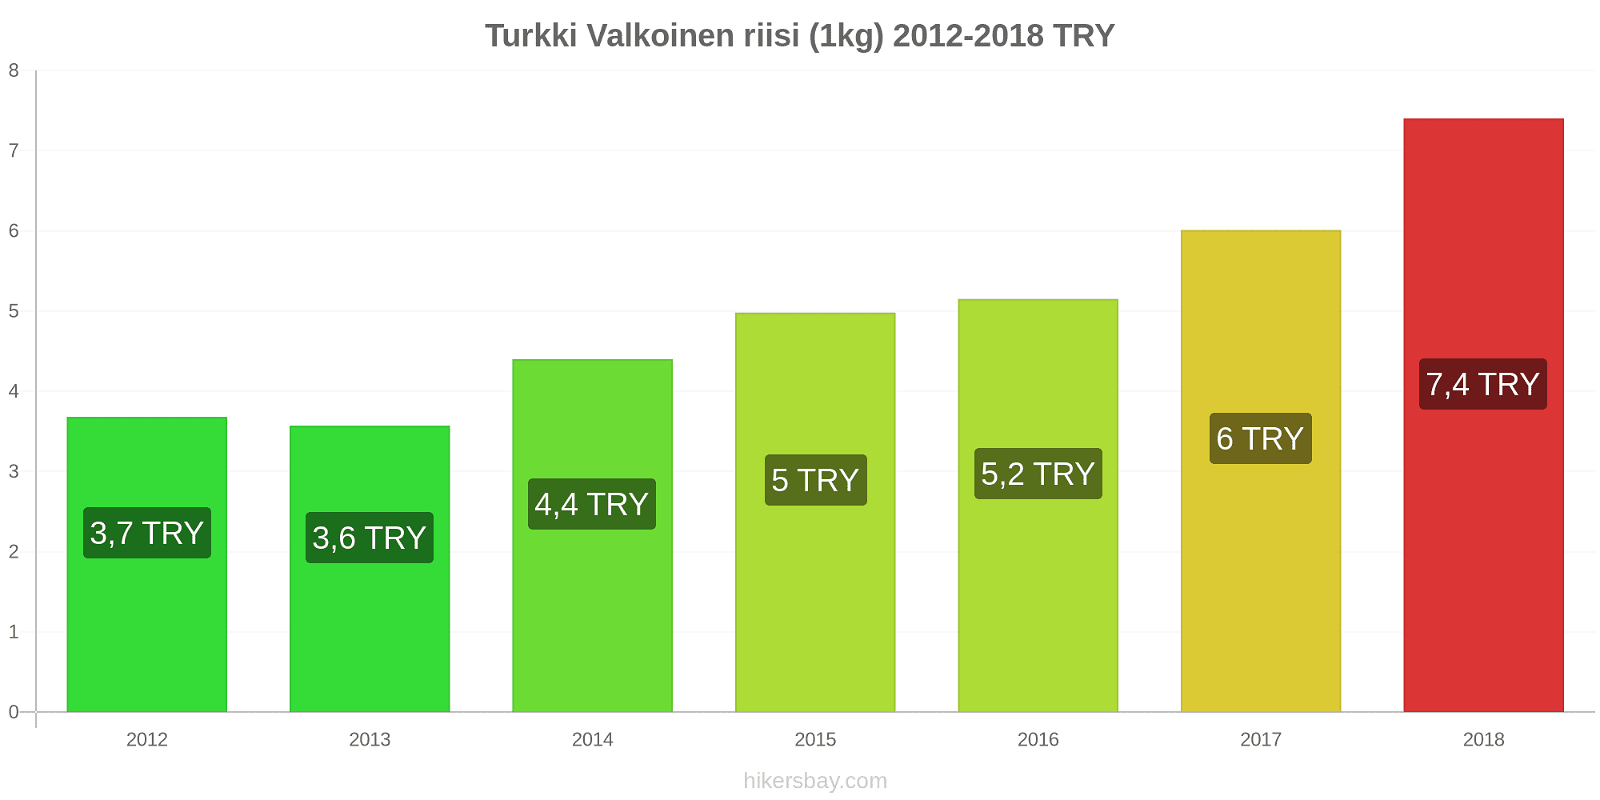 Turkki hintojen muutokset Kilo valkoista riisiä hikersbay.com